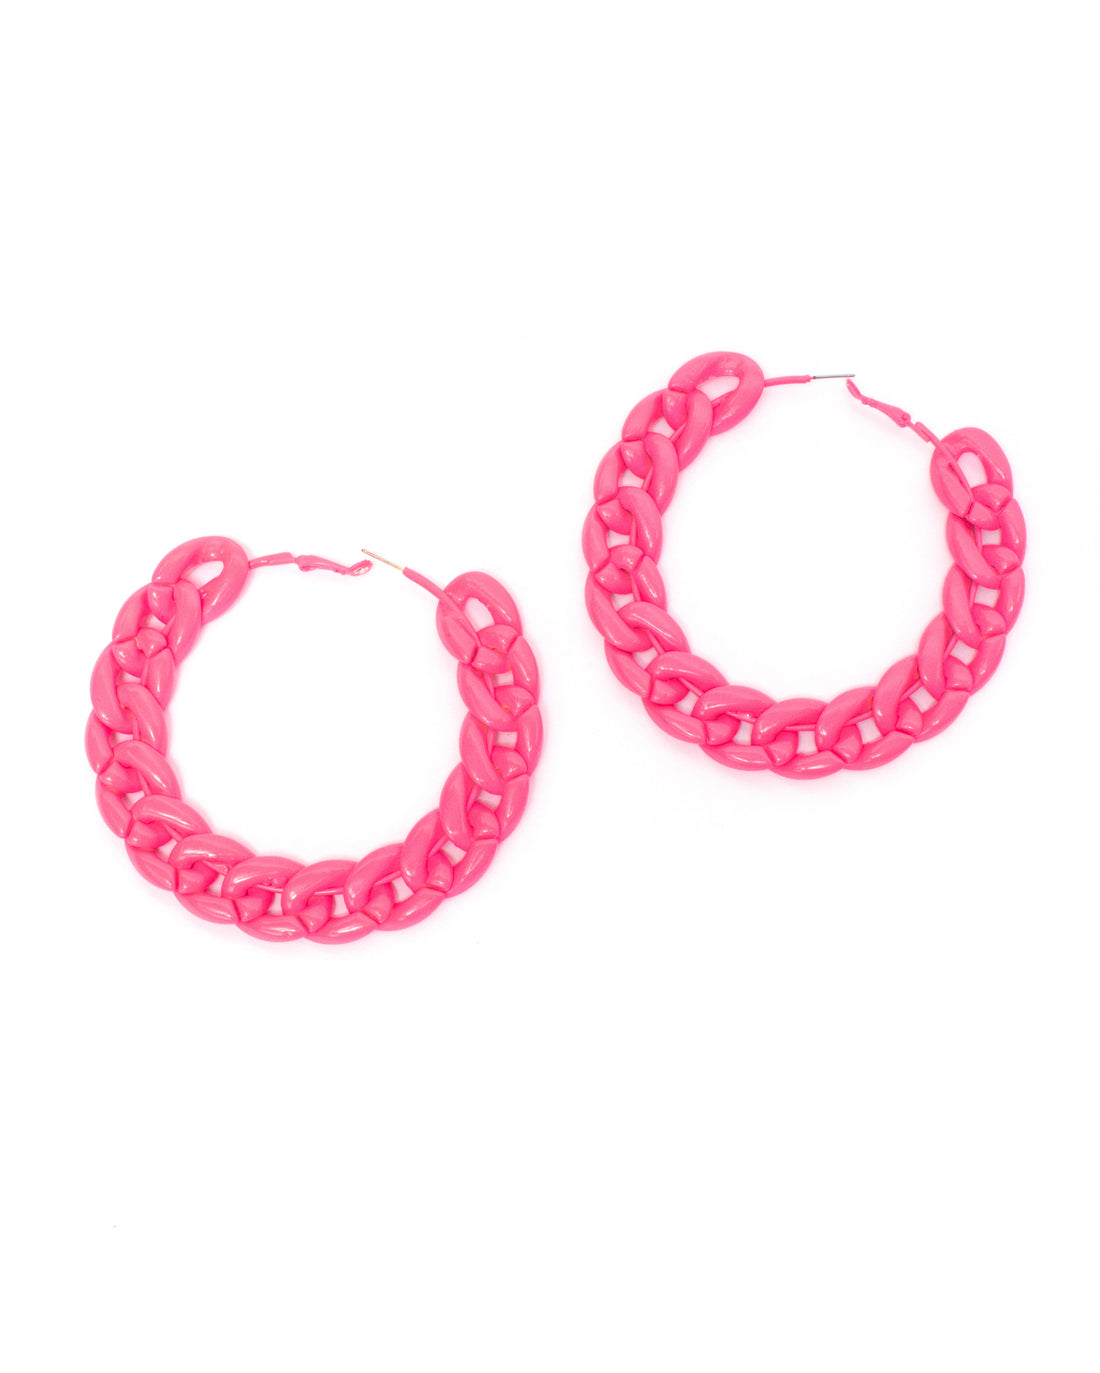 Pink Chain Hoop Earrings - Lunautics Earrings